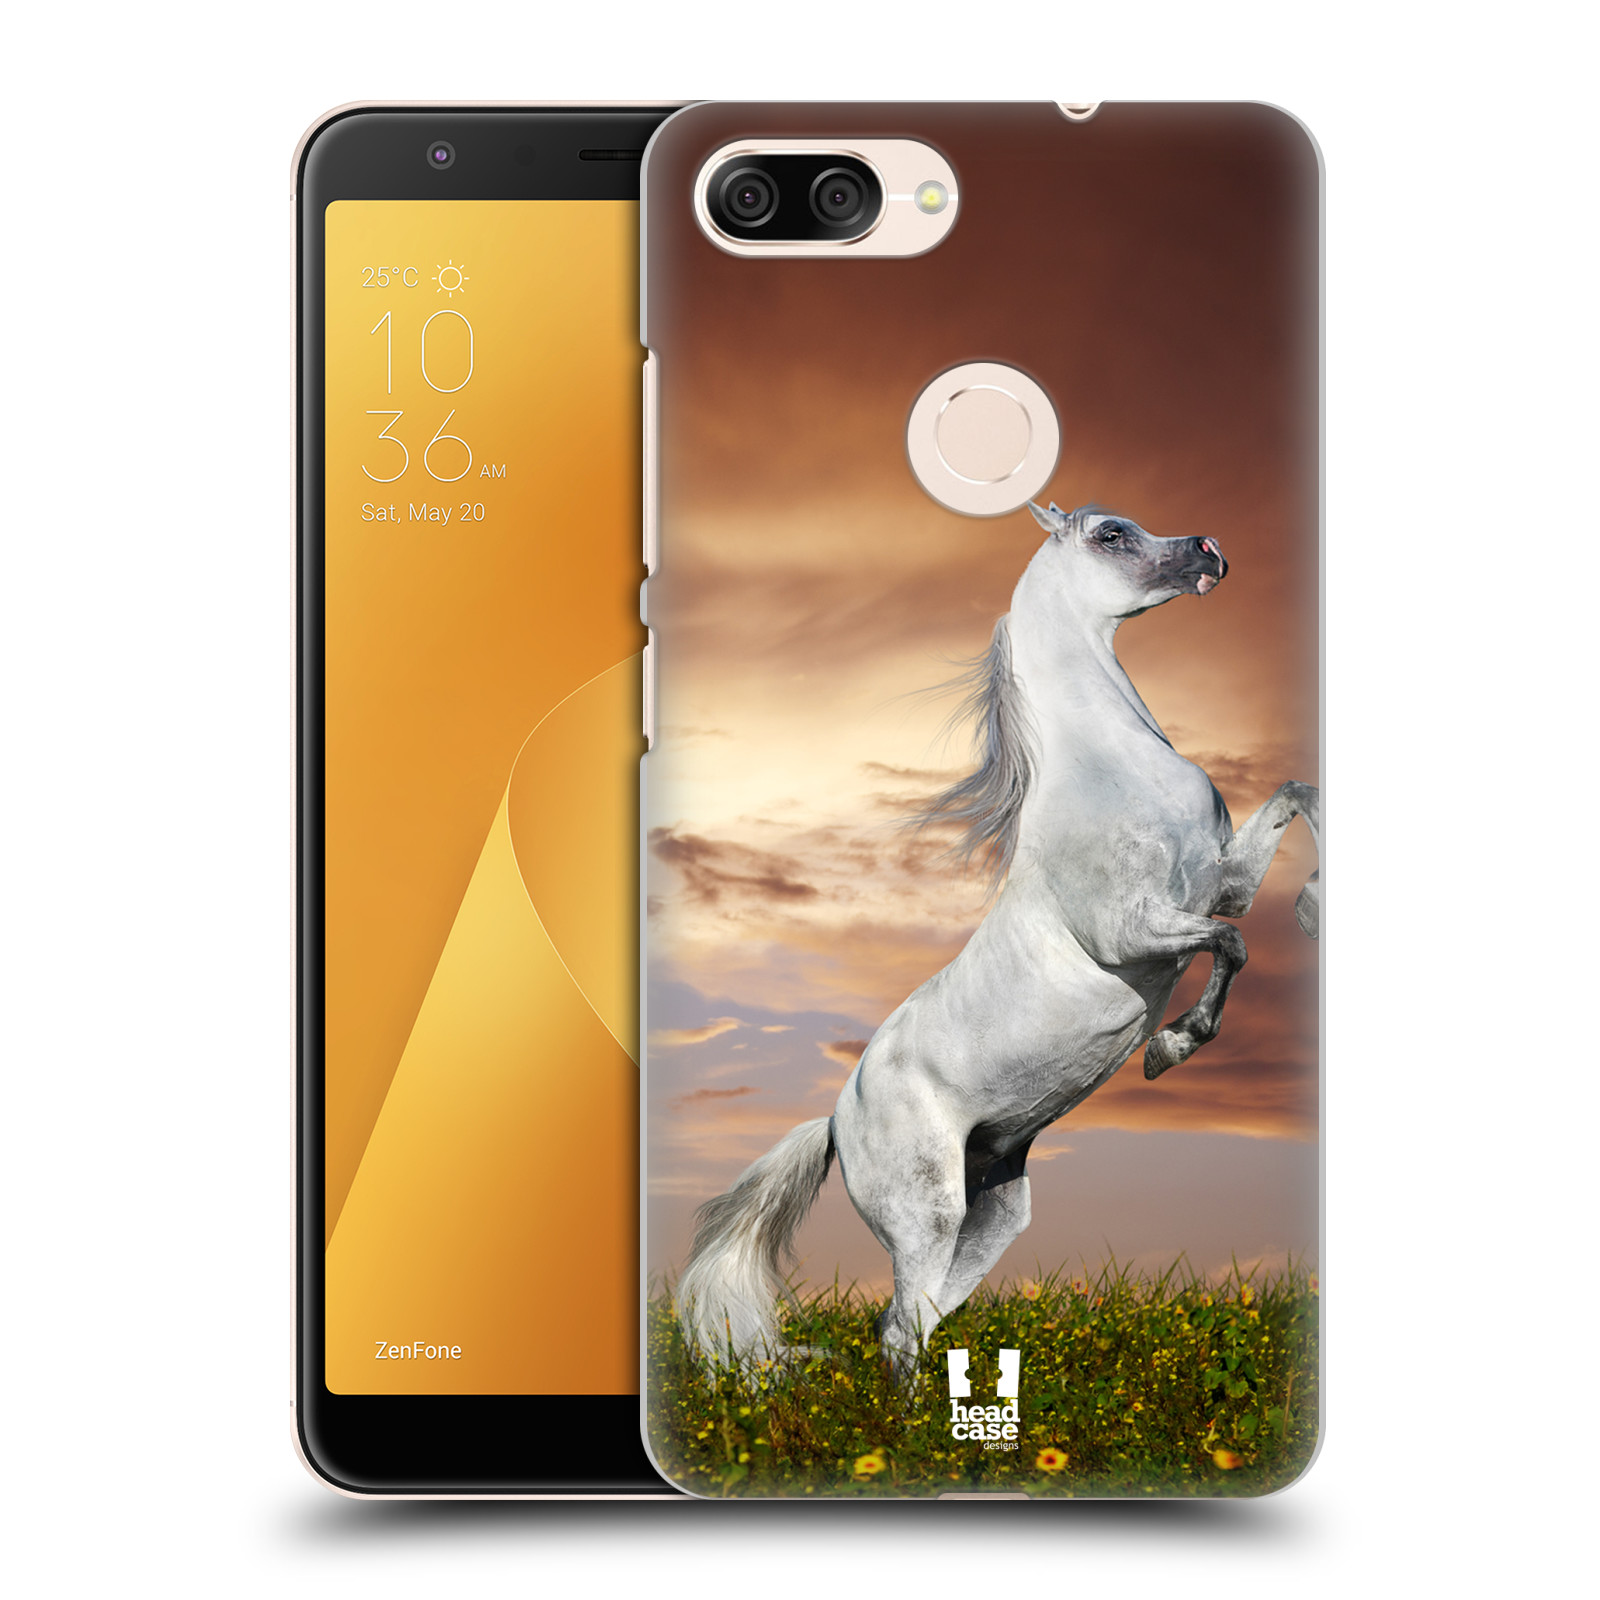 Zadní obal pro mobil Asus Zenfone Max Plus (M1) - HEAD CASE - Svět zvířat divoký kůň